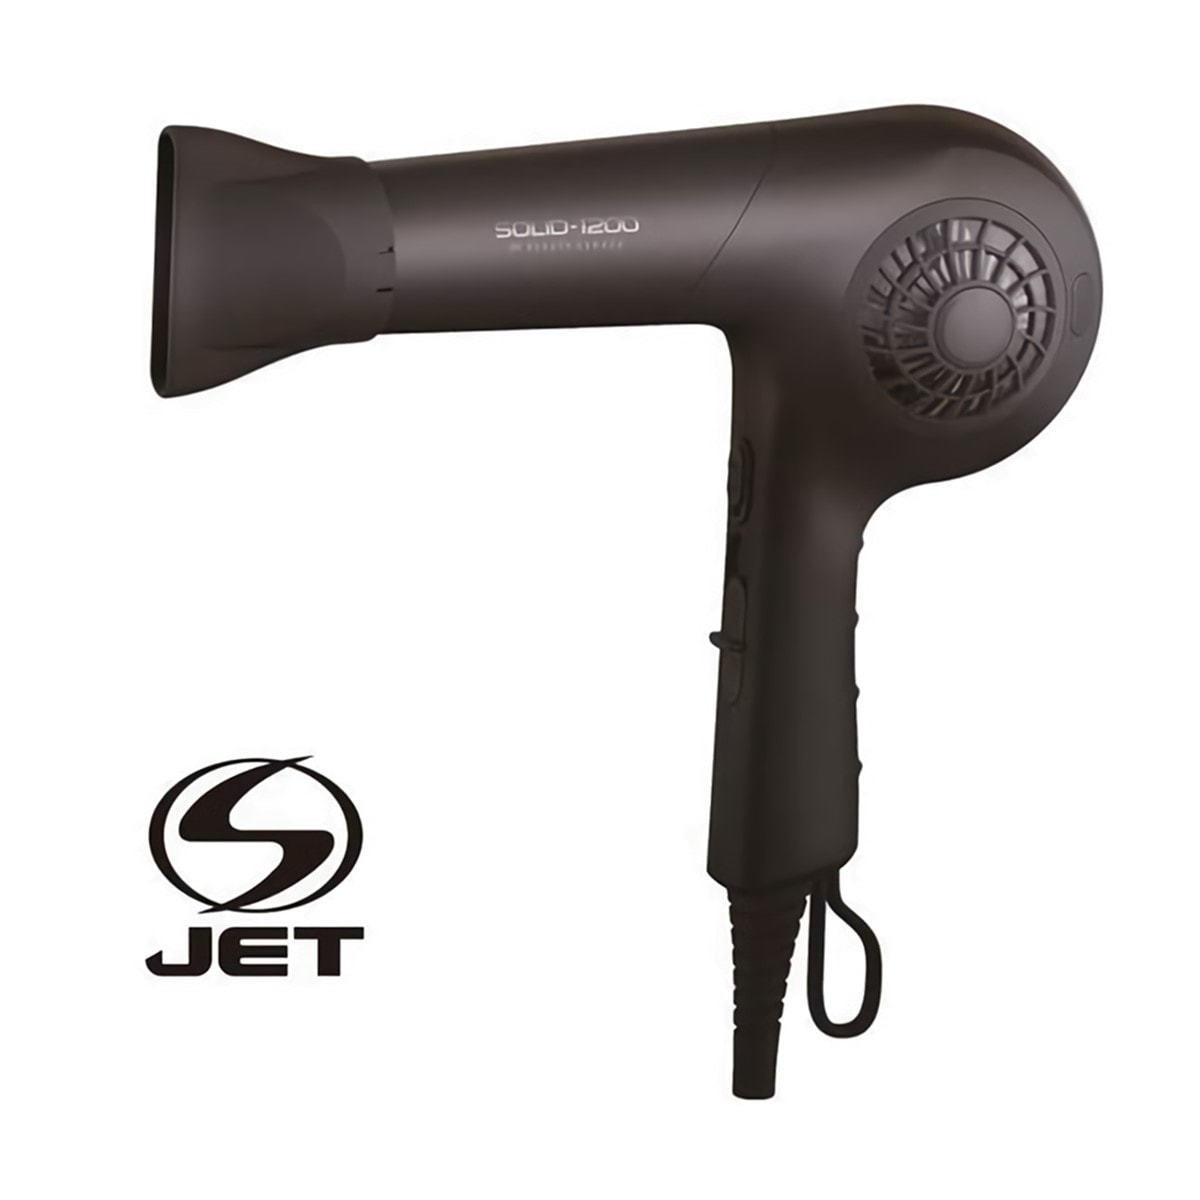 S-JET認証取得】プロフェッショナルヘアドライヤーSOLID-1200 （1200W） マットブラックの卸・通販 | ビューティガレージ